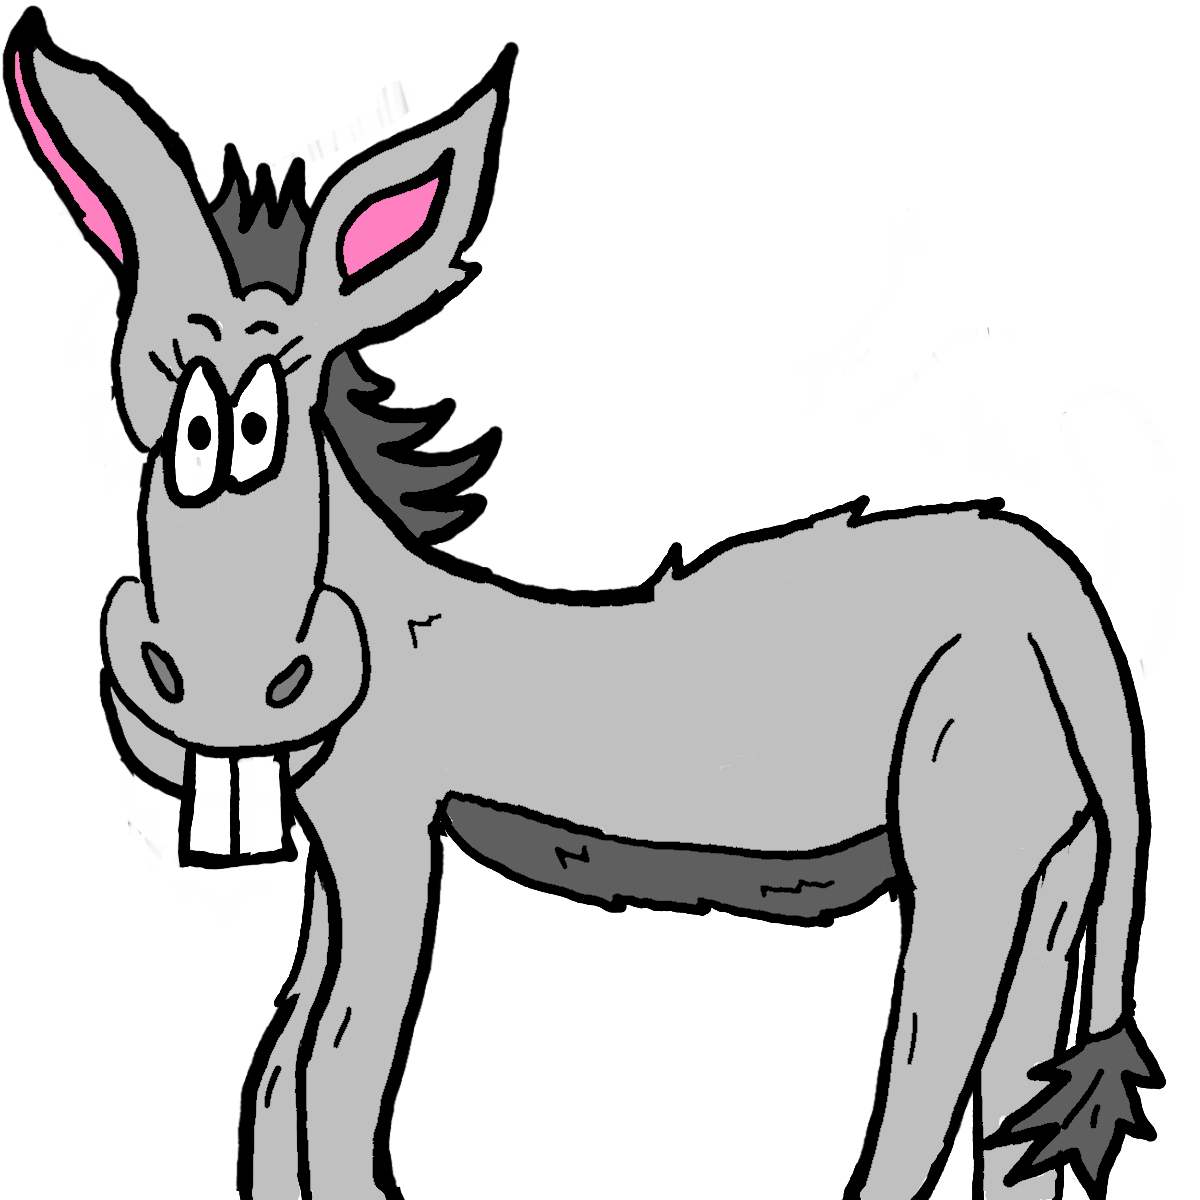 donkey cartoon style clipart.